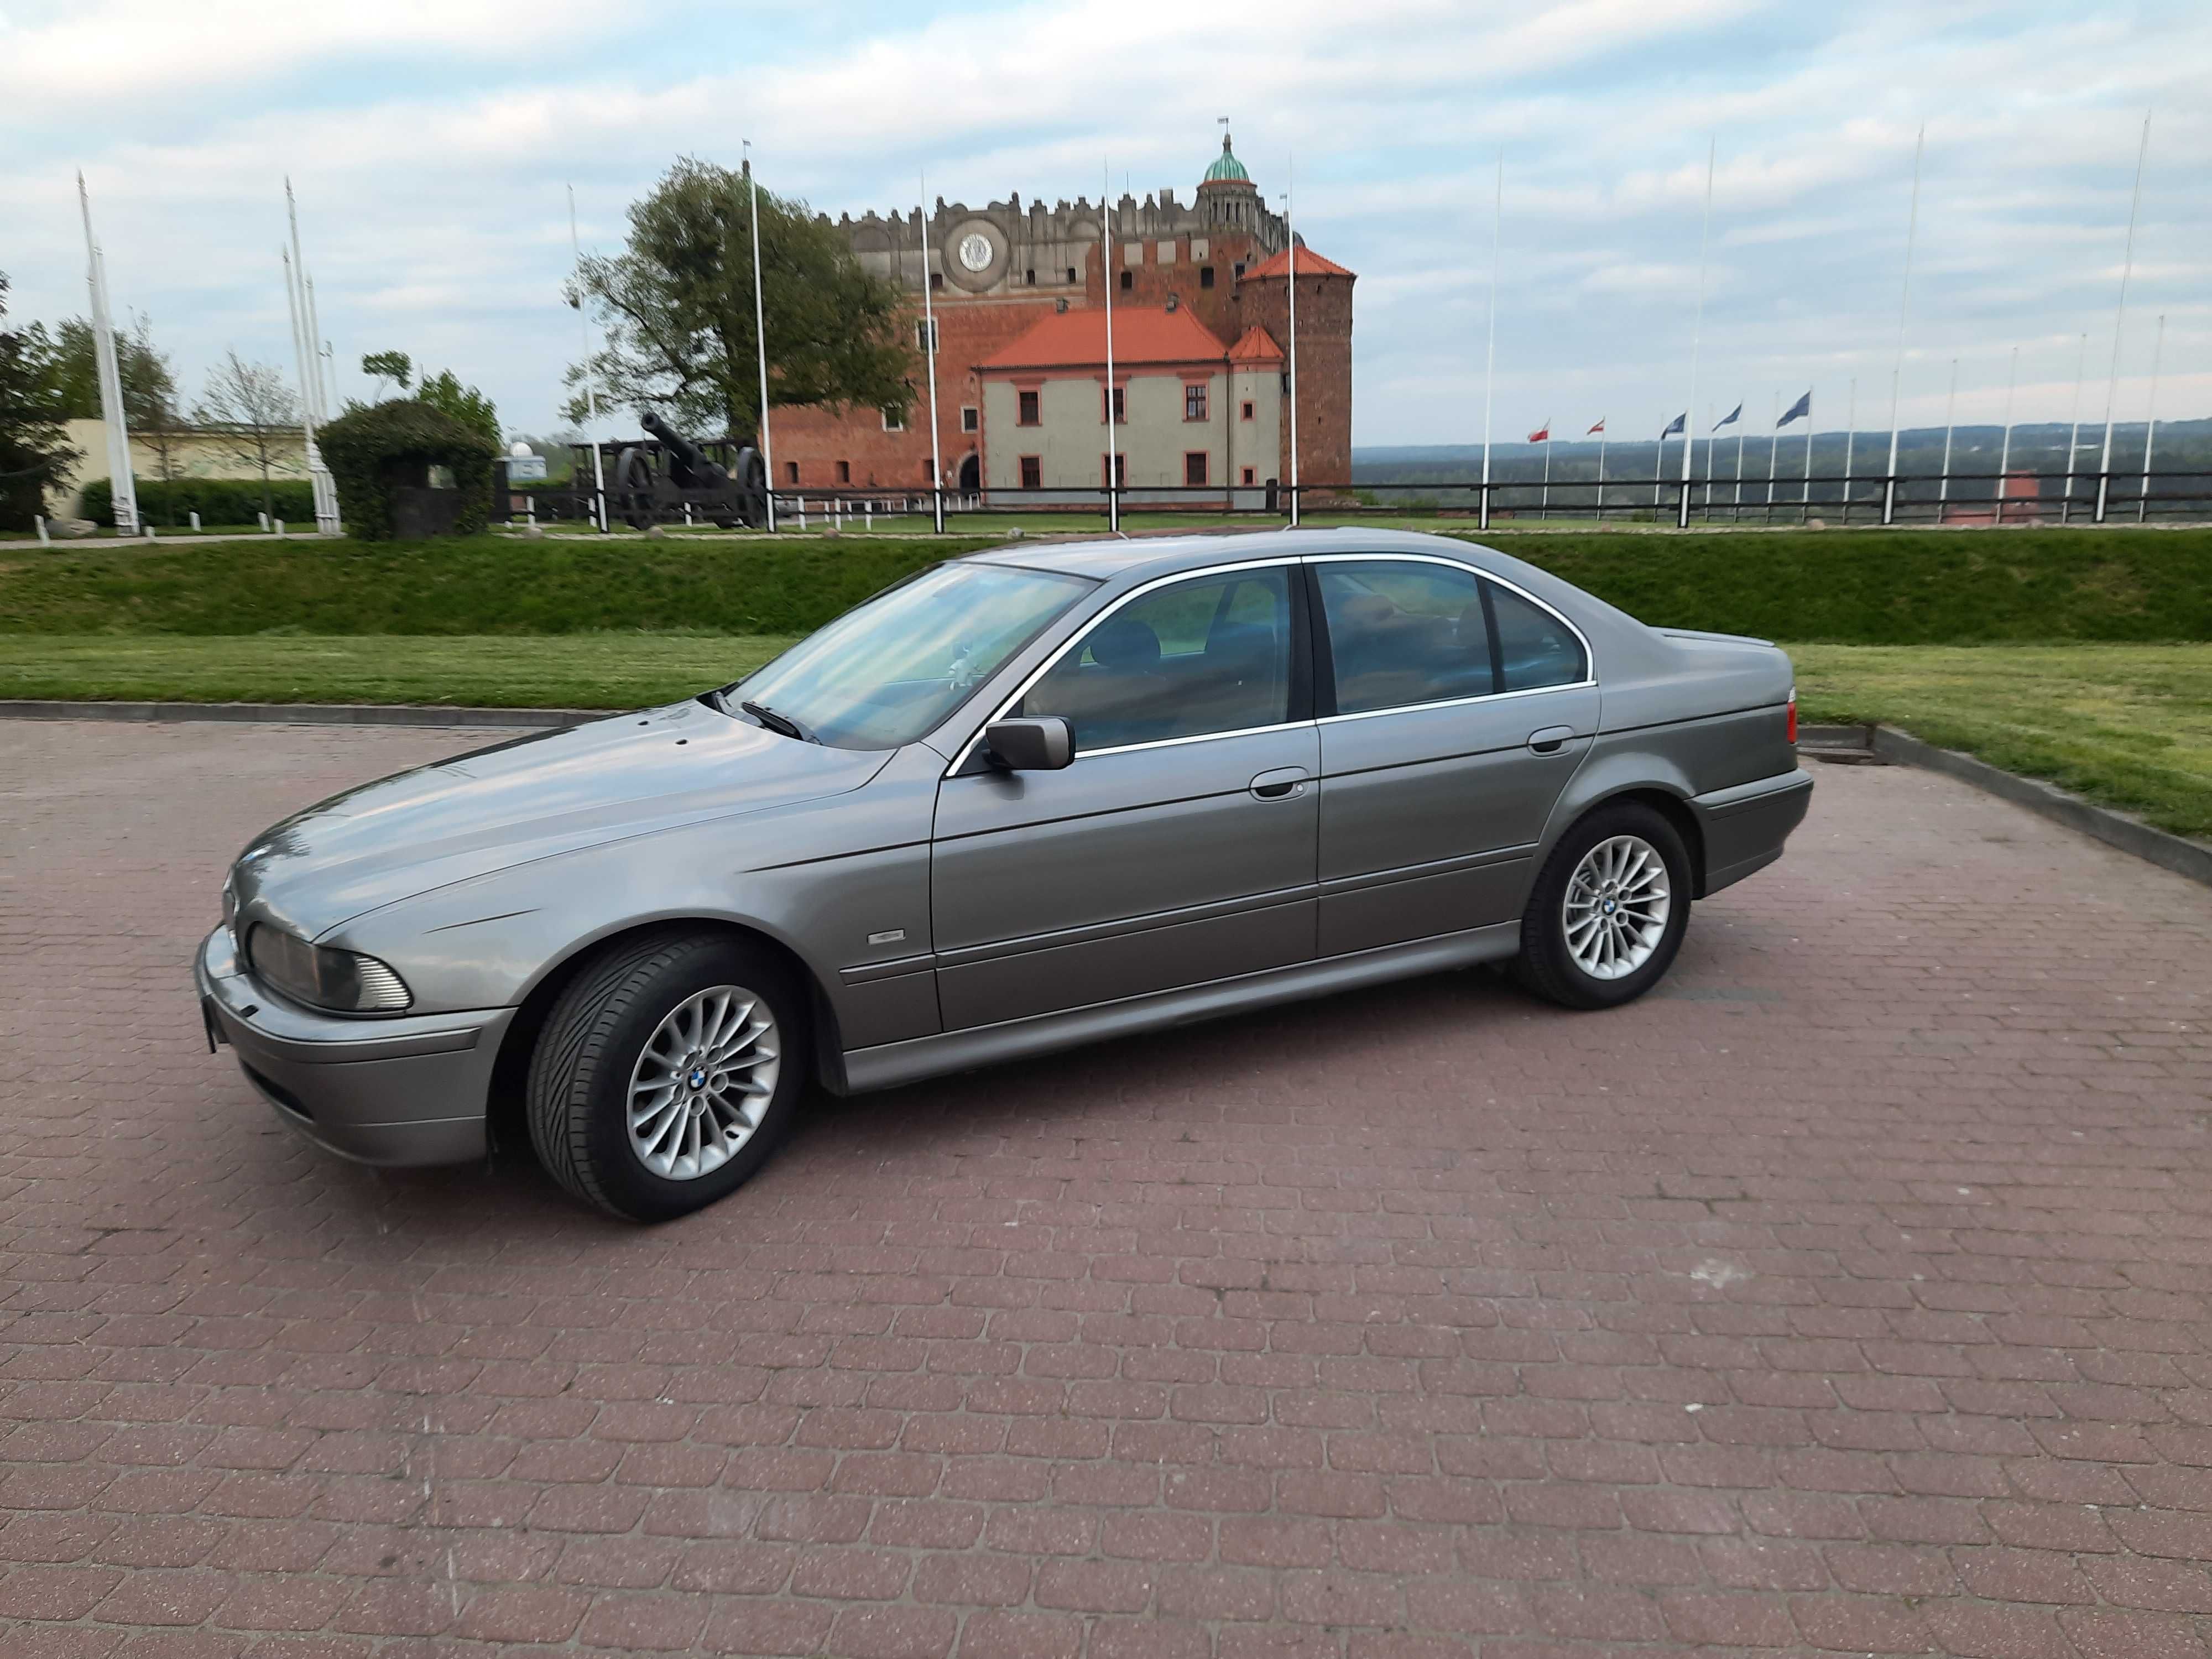 BMW E39 525i 192 KM M54 manual xenon - prawie 10 lat w jednych rękach